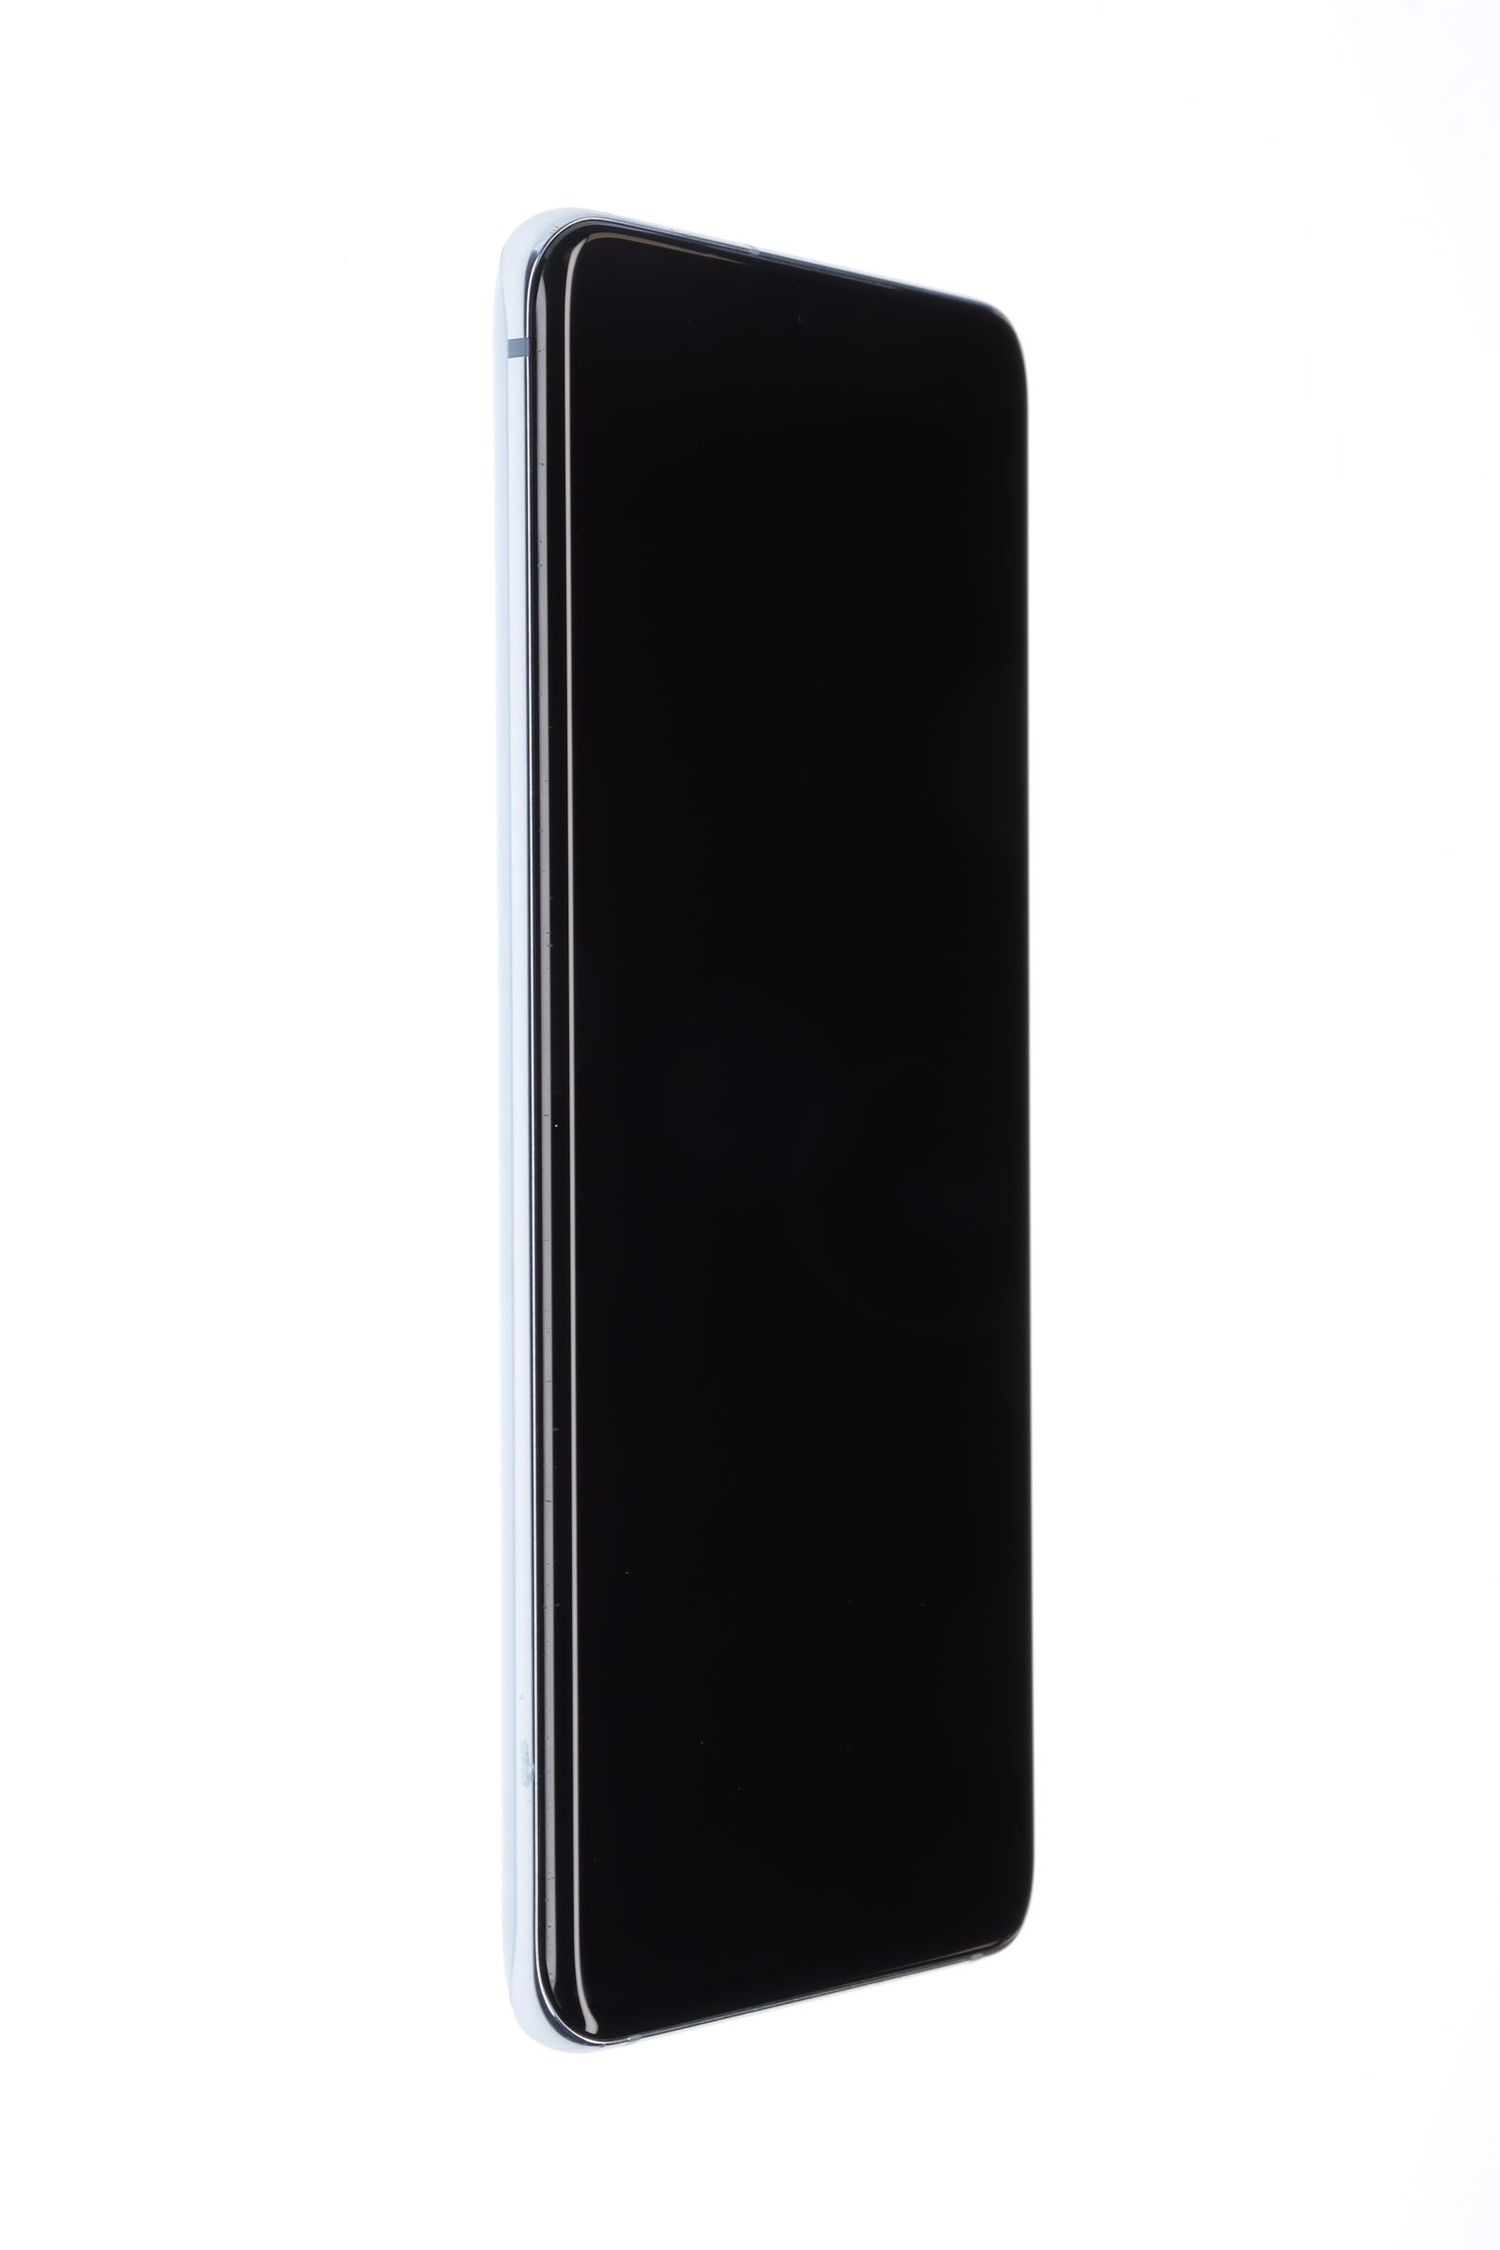 Κινητό τηλέφωνο Samsung Galaxy S20, Cloud Blue, 128 GB, Foarte Bun